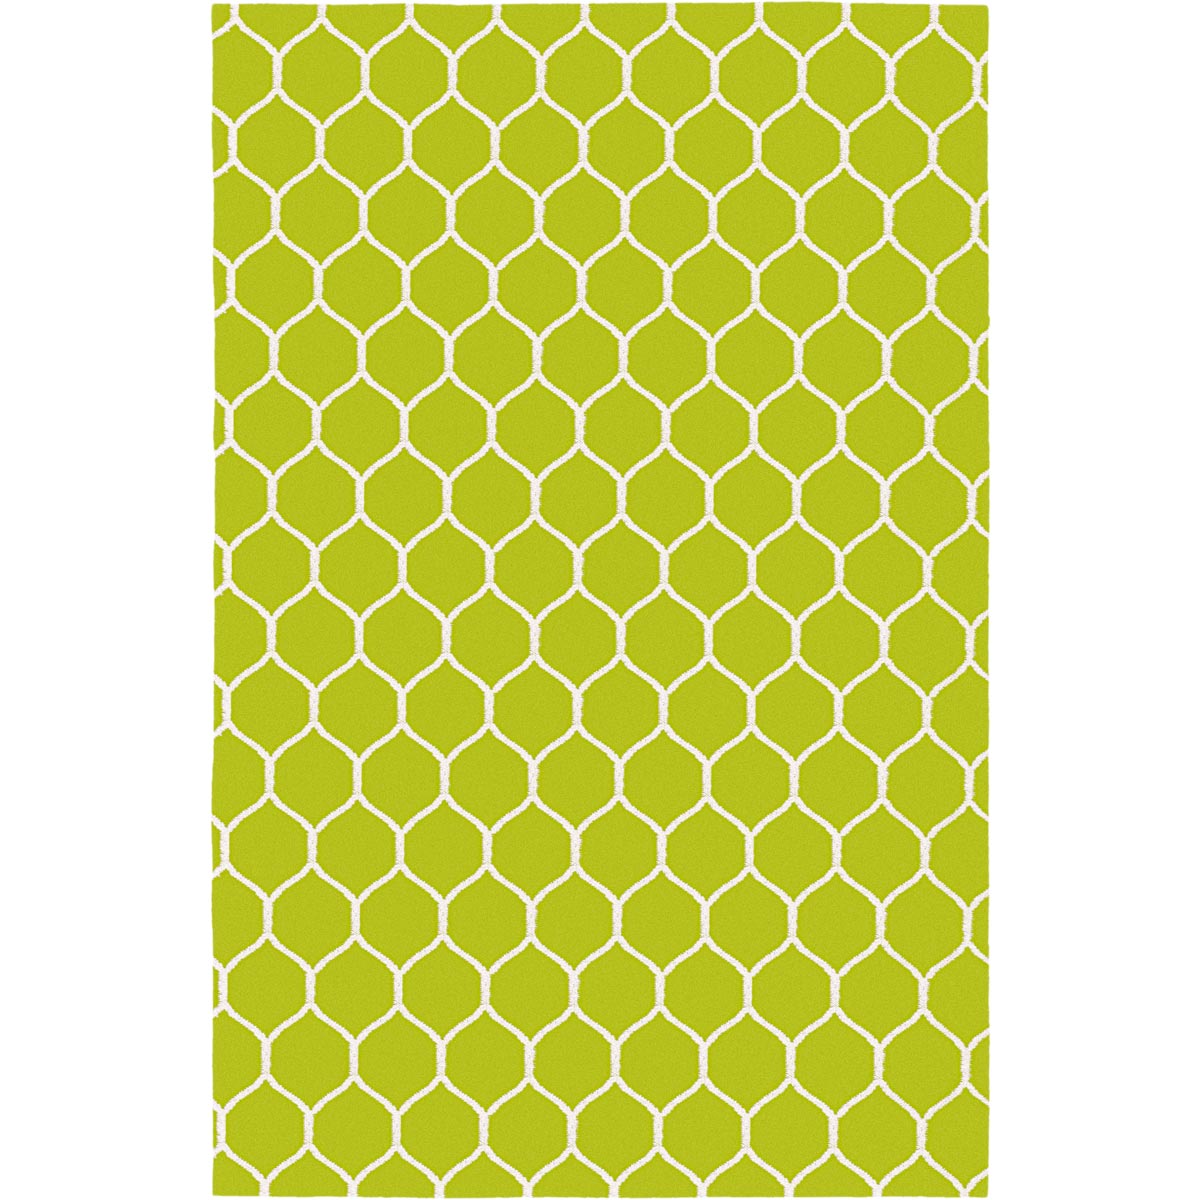 שטיח קילים הדס 04 ירוק/לבן | השטיח האדום